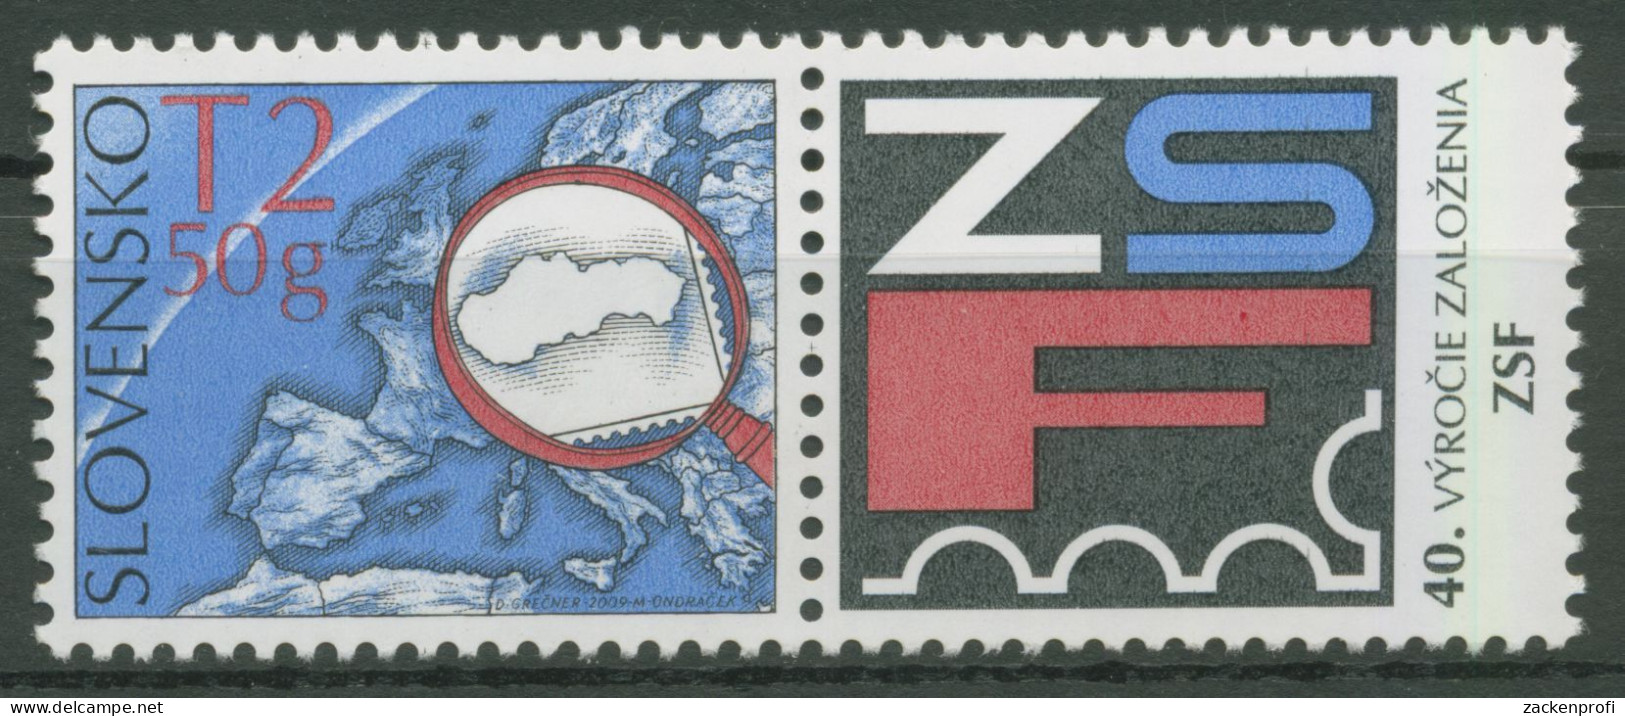 Slowakei 2009 Philatelistenverband 613 Zf Postfrisch - Nuovi